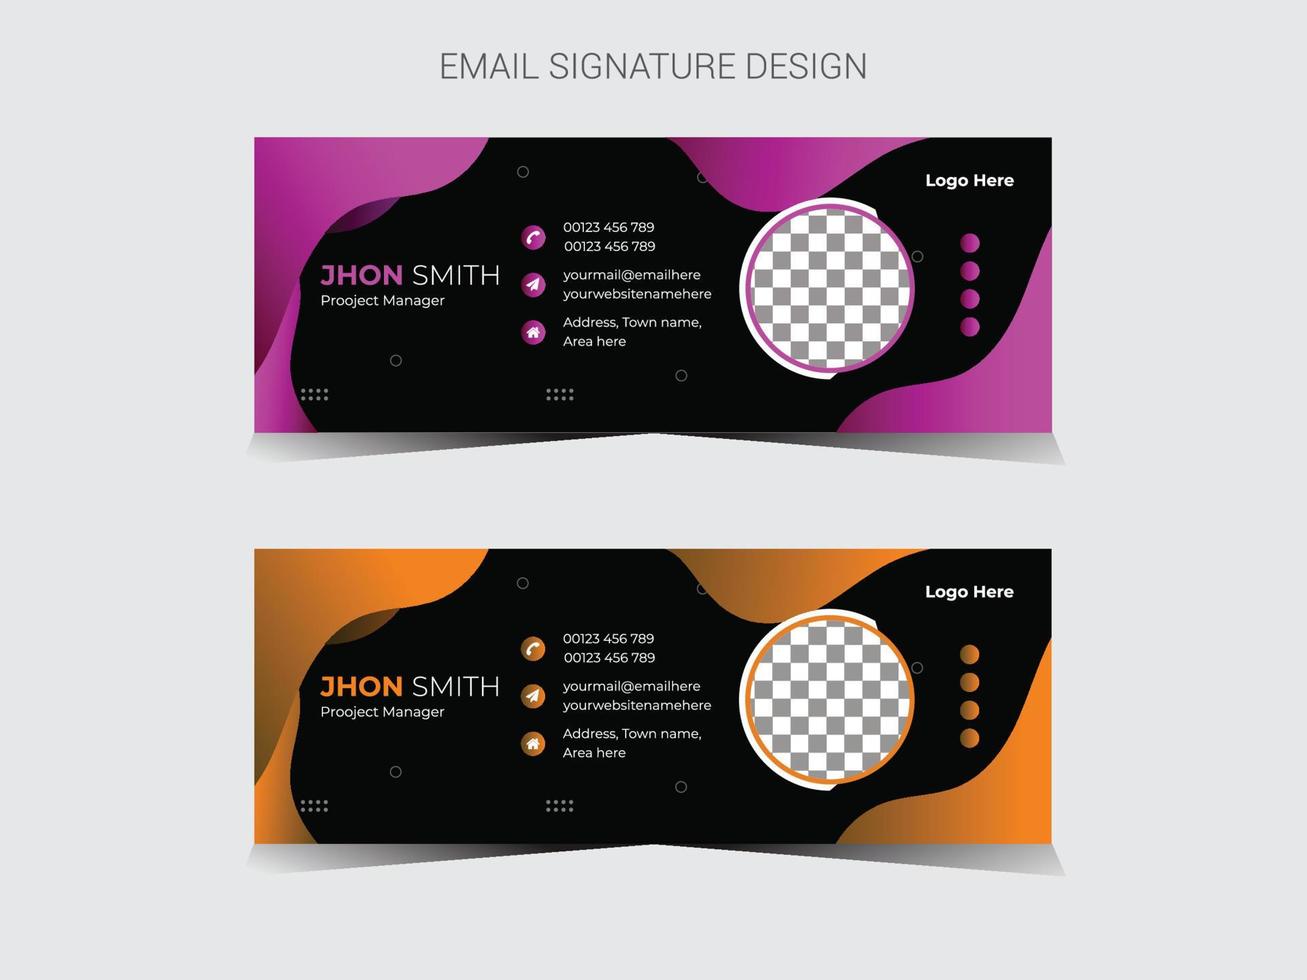 diseño de firma de correo electrónico profesional vector